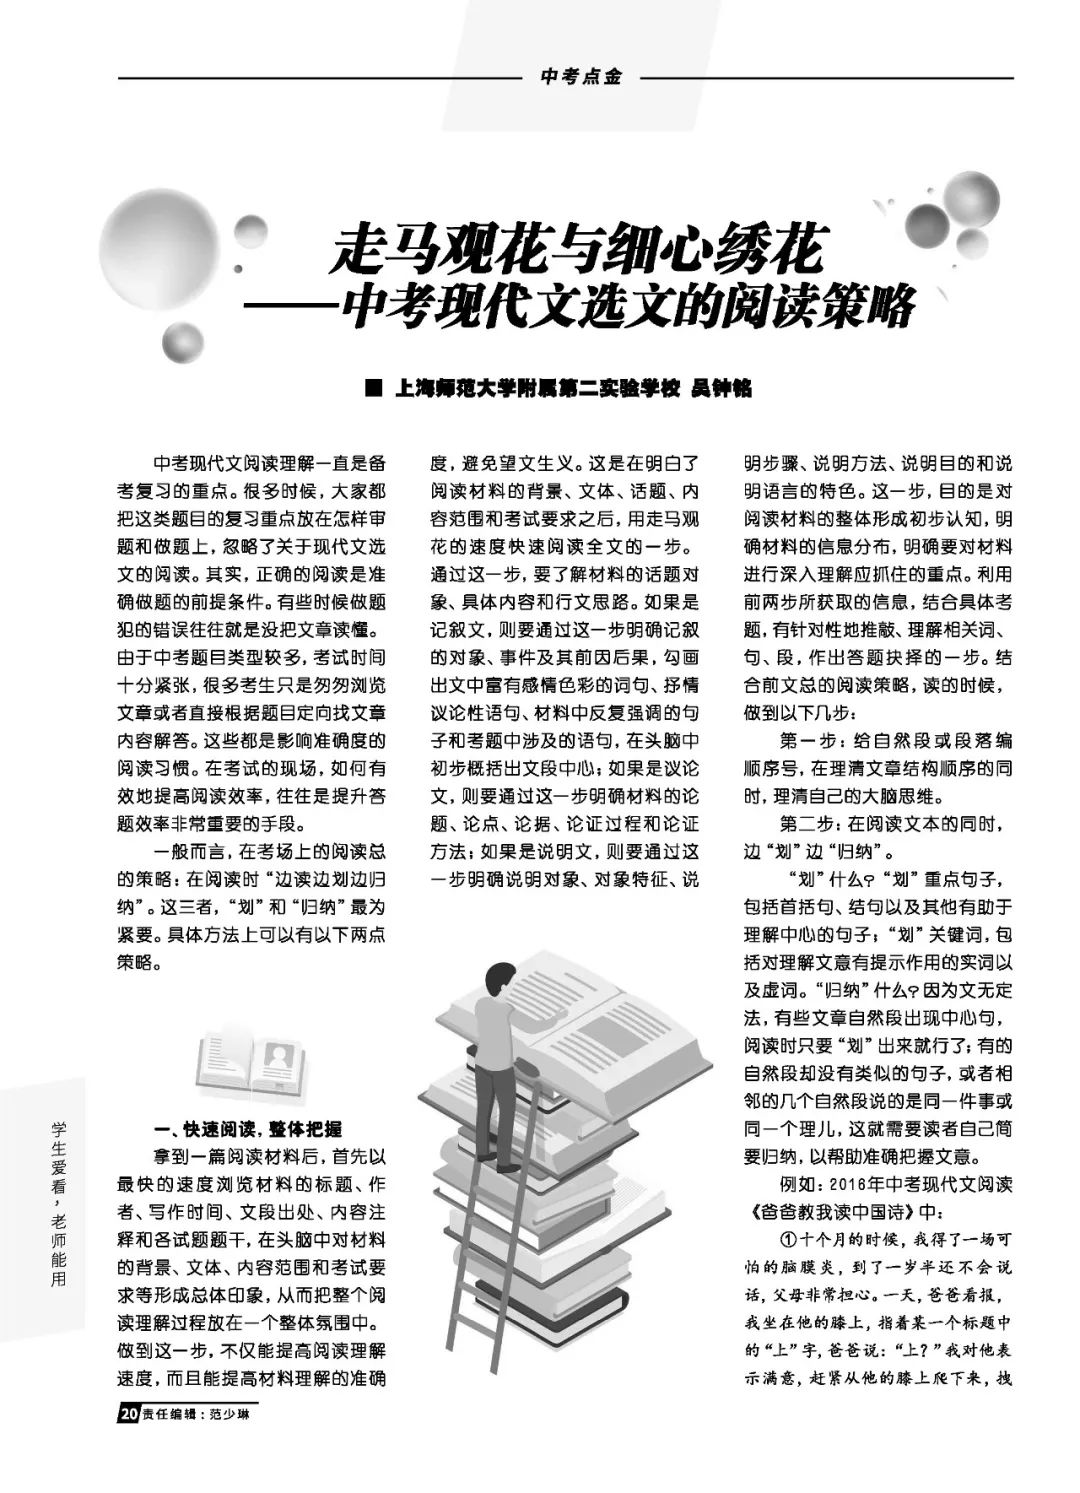 必備參考書：2019年上海語文中高考升學指導特刊，現已正式出版！ 留學 第15張